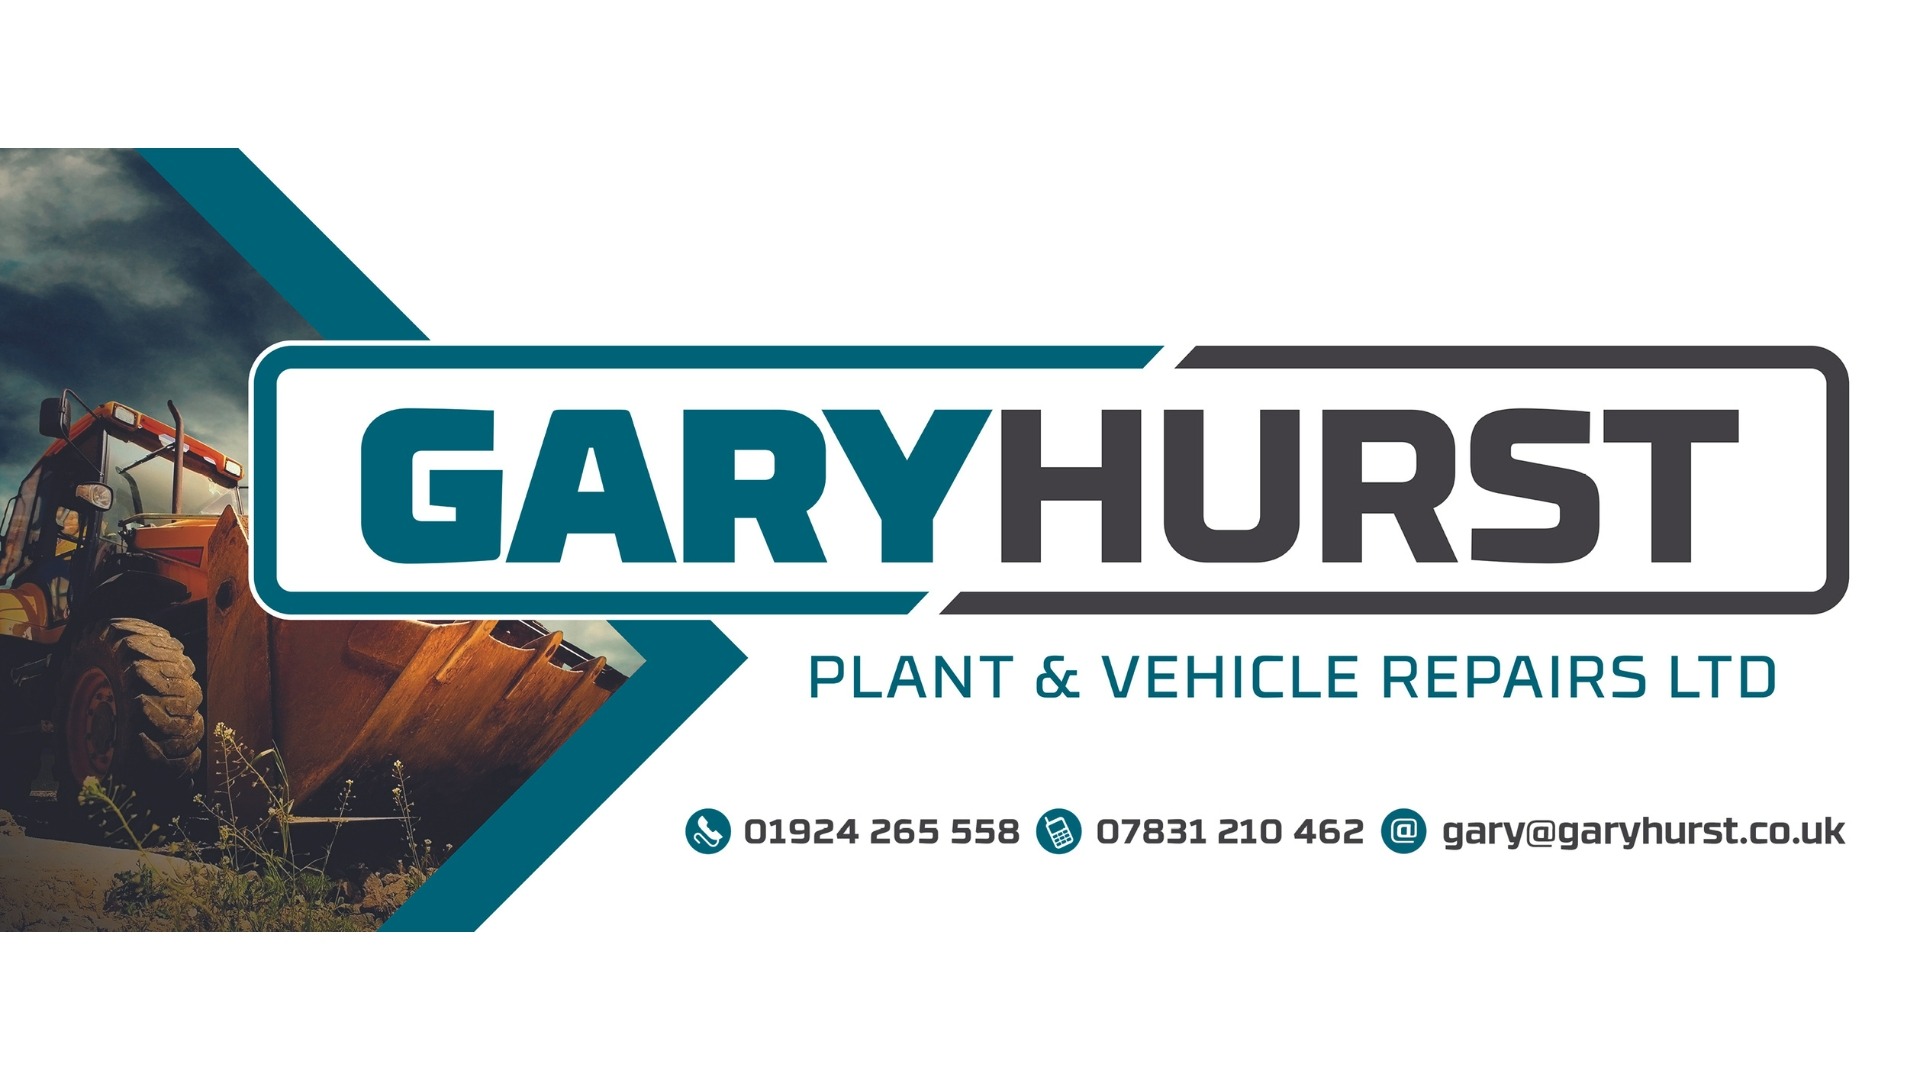 Gary Hurst Plant & Vehicle Repairs Ltd